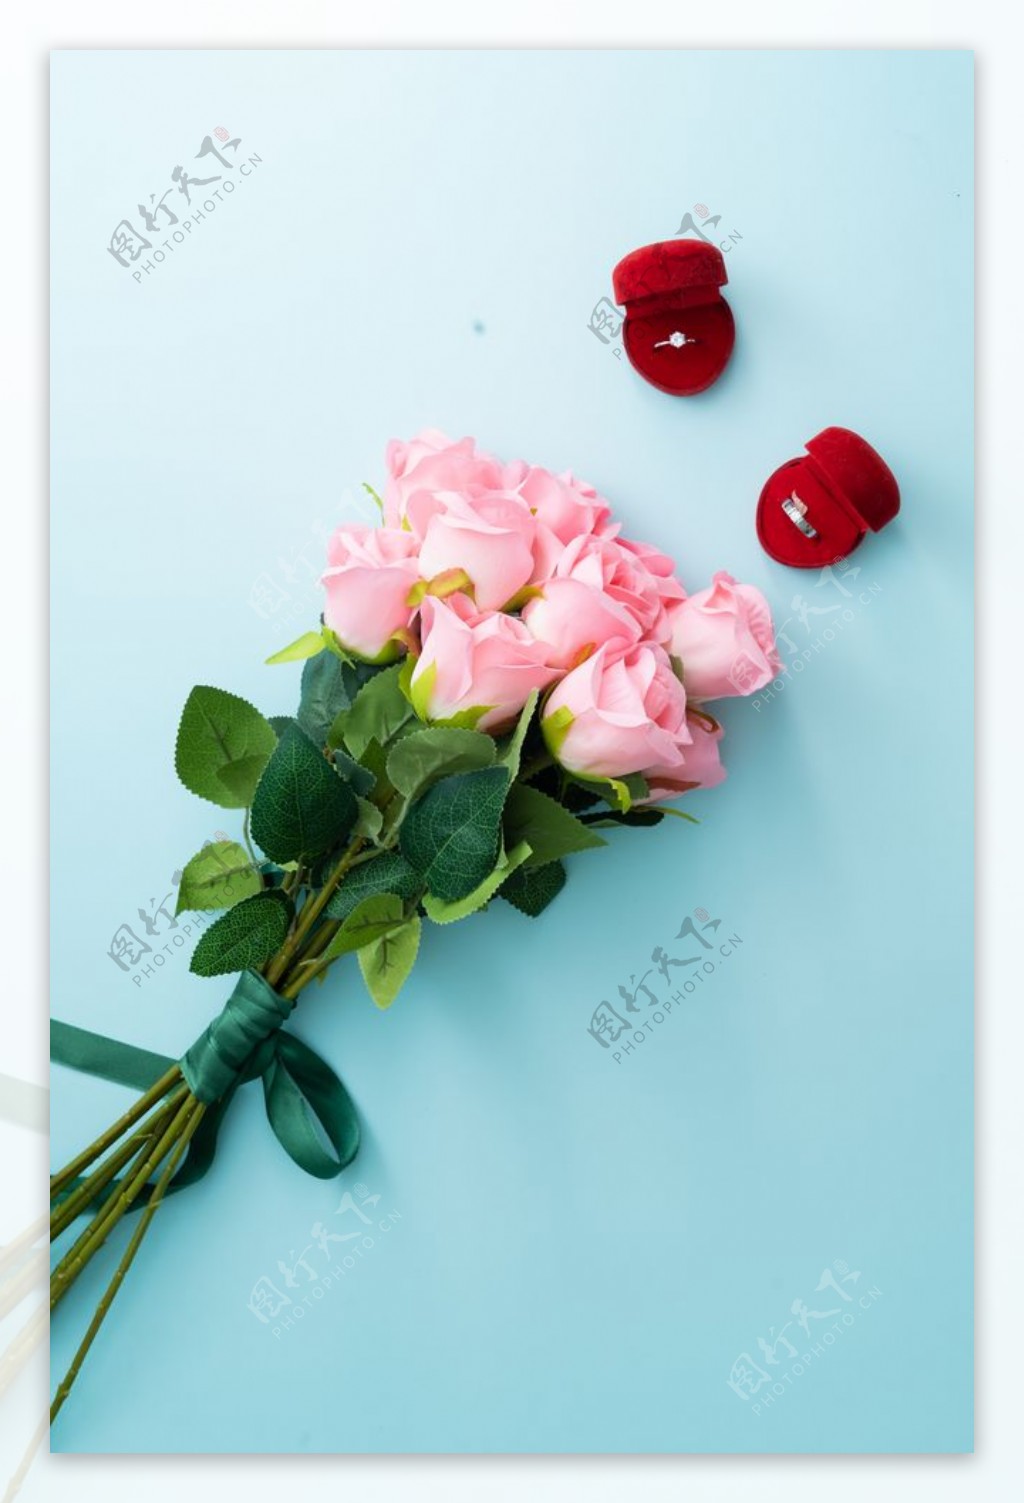 一大束美丽的粉色玫瑰图片